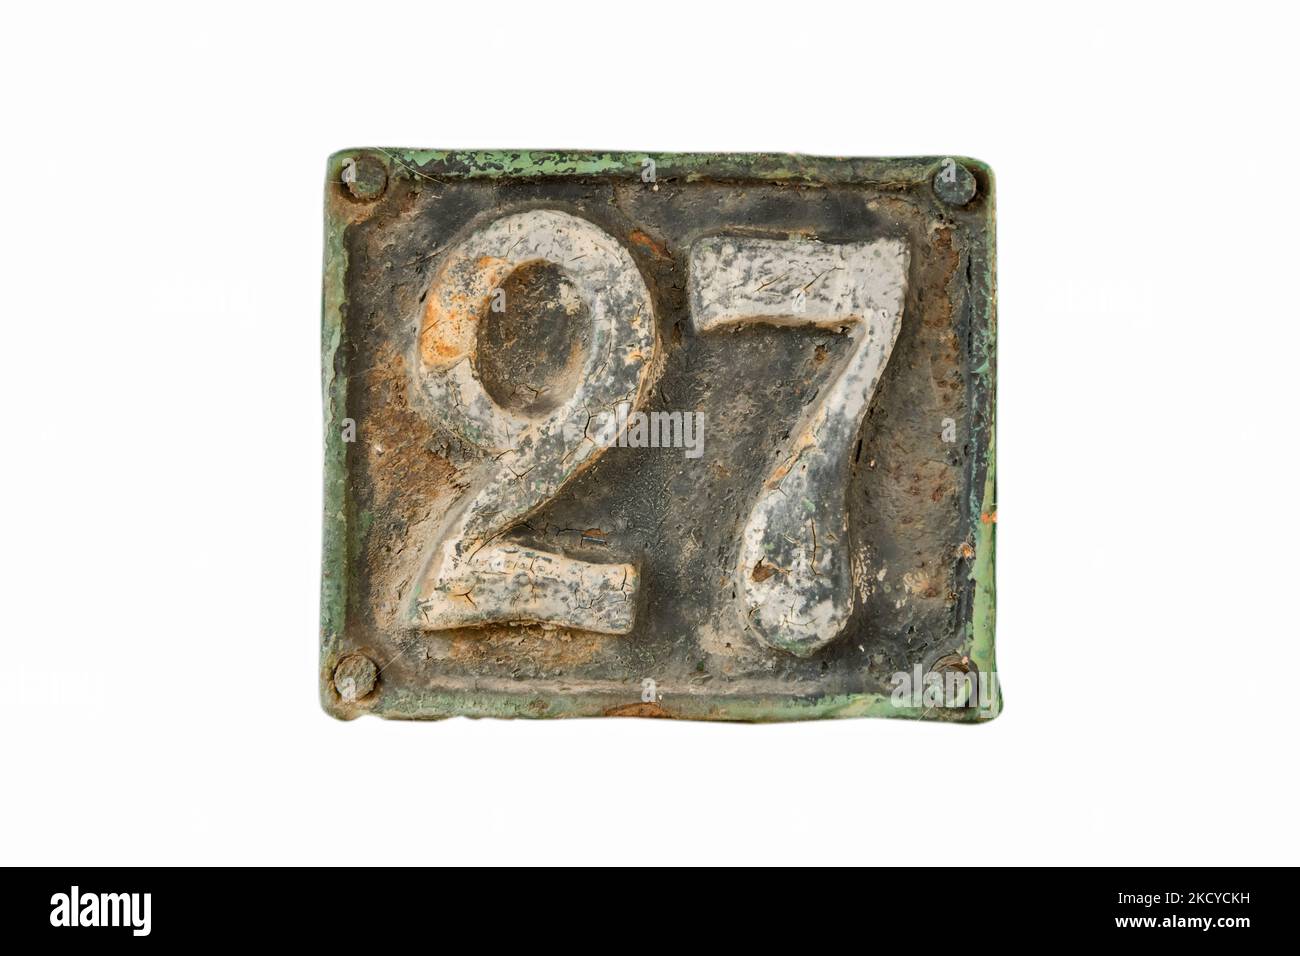 27 Antique Cast Iron Bundt Pan